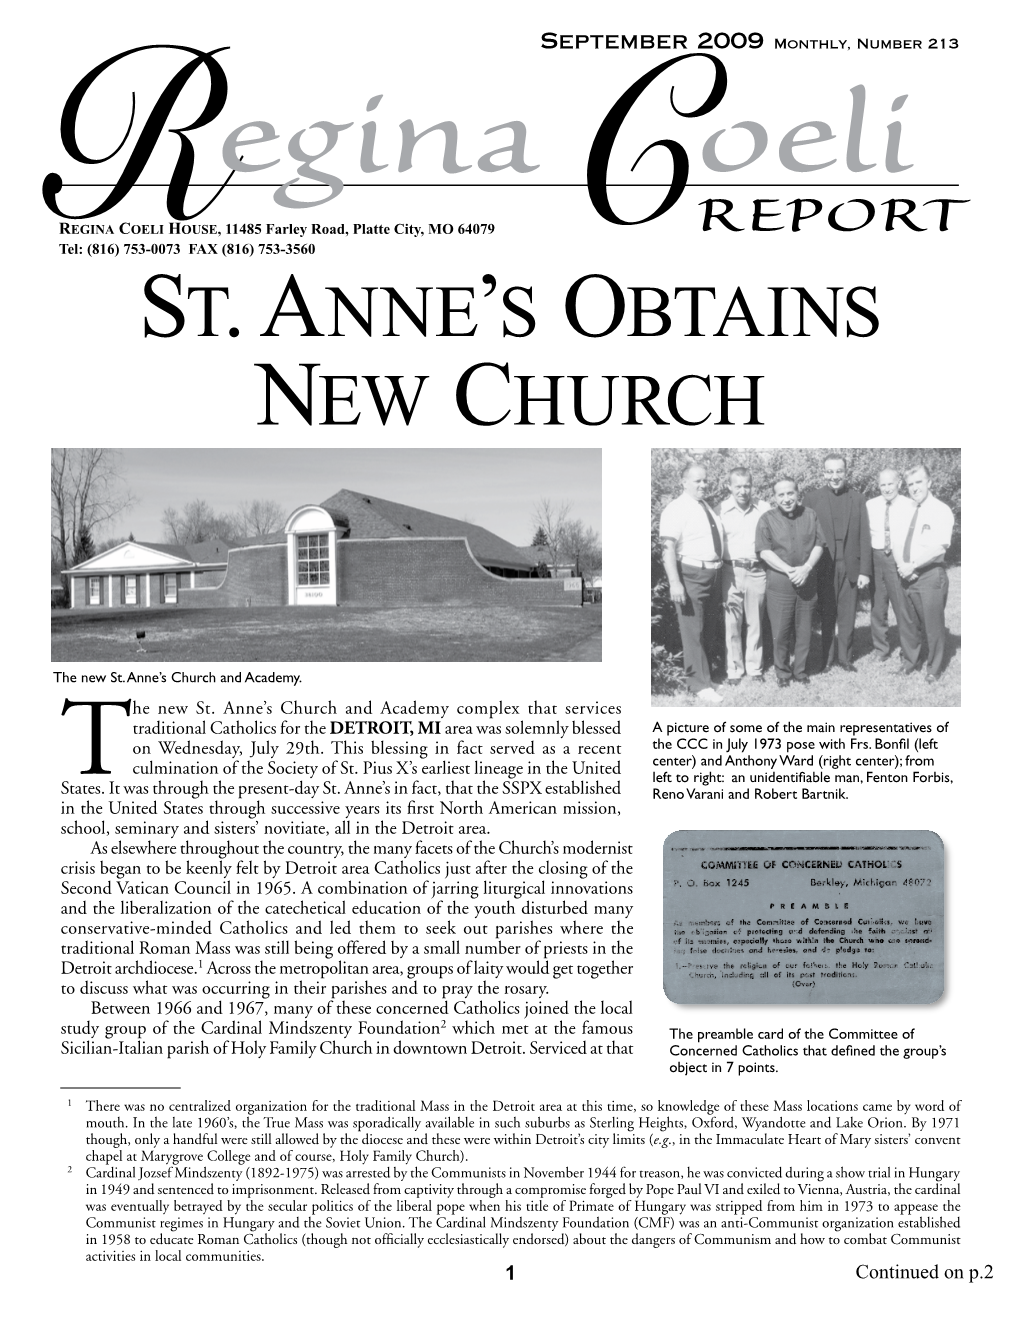 St. Anne's Obtains New Church